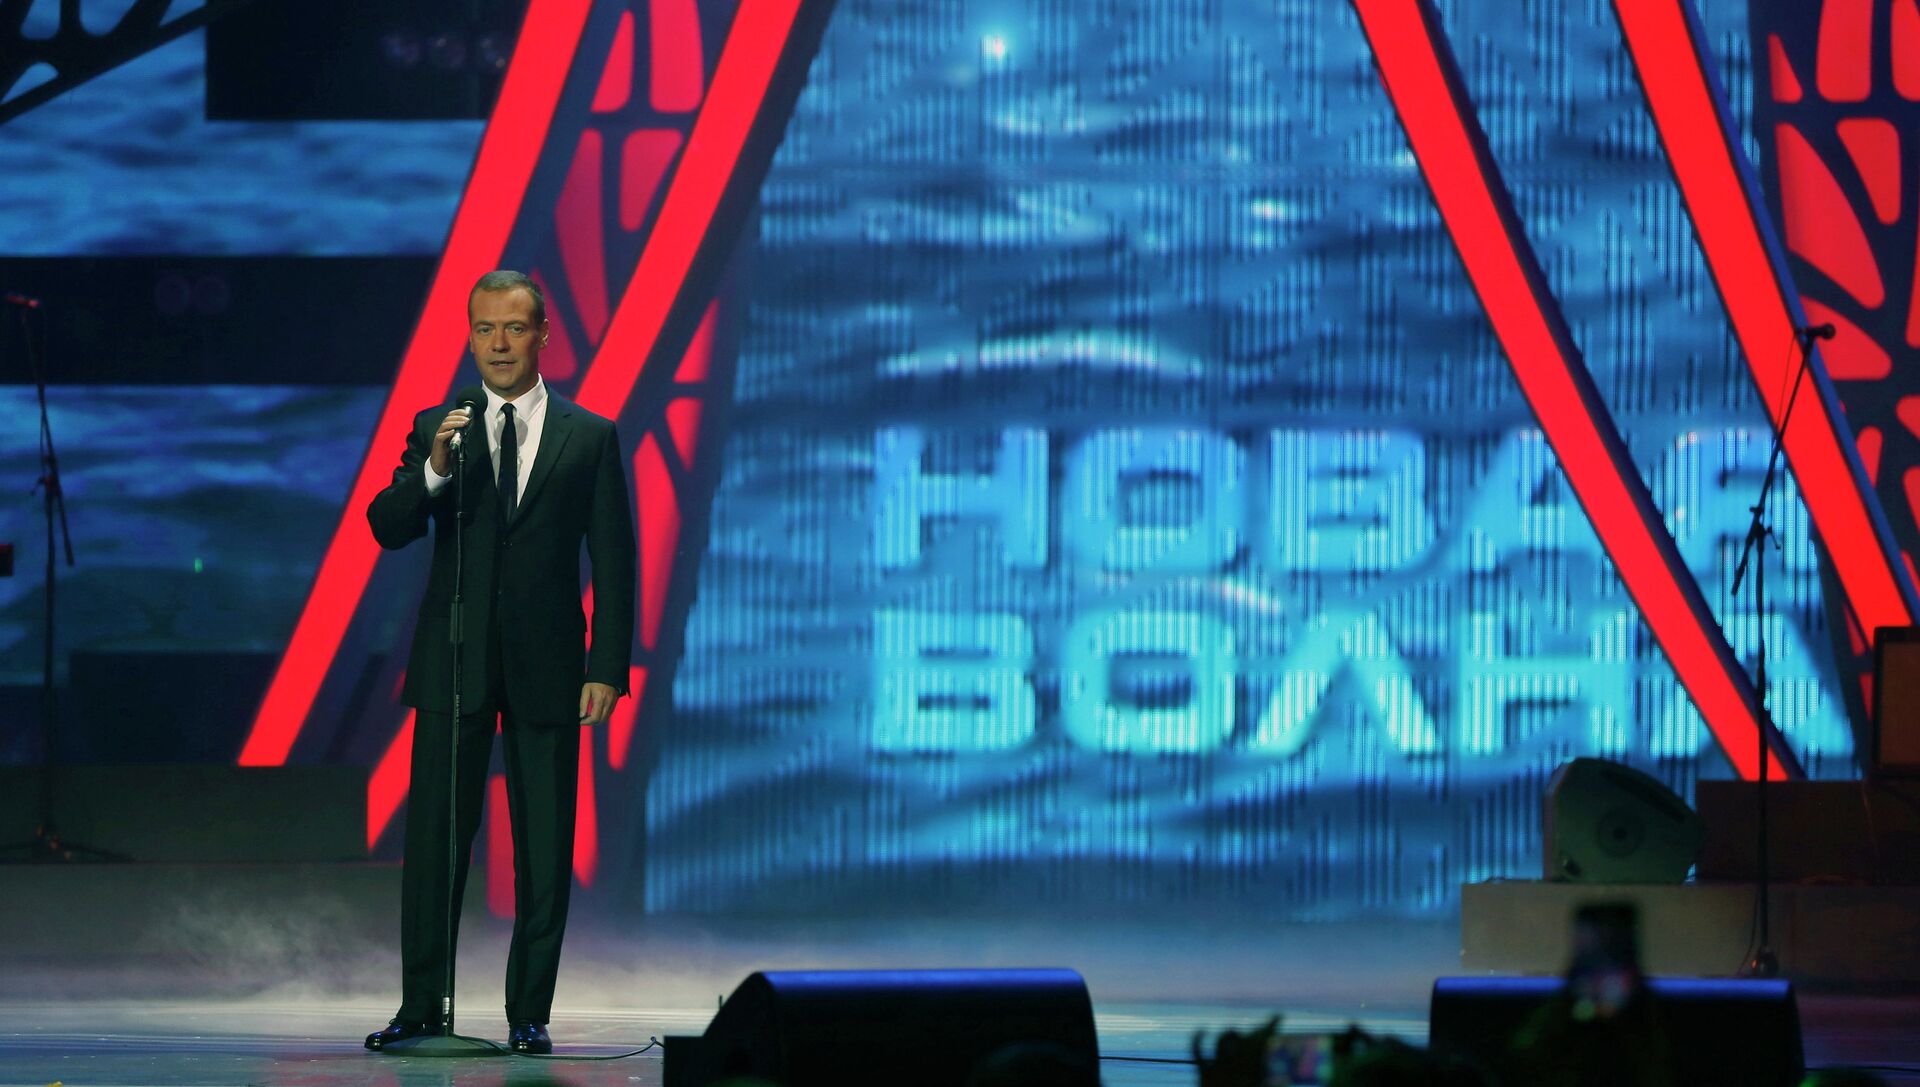 Выступление медведева в сочи. Новая волна 2015 Сочи. Новая волна 2015 программа. Медведев выступает на сцене.